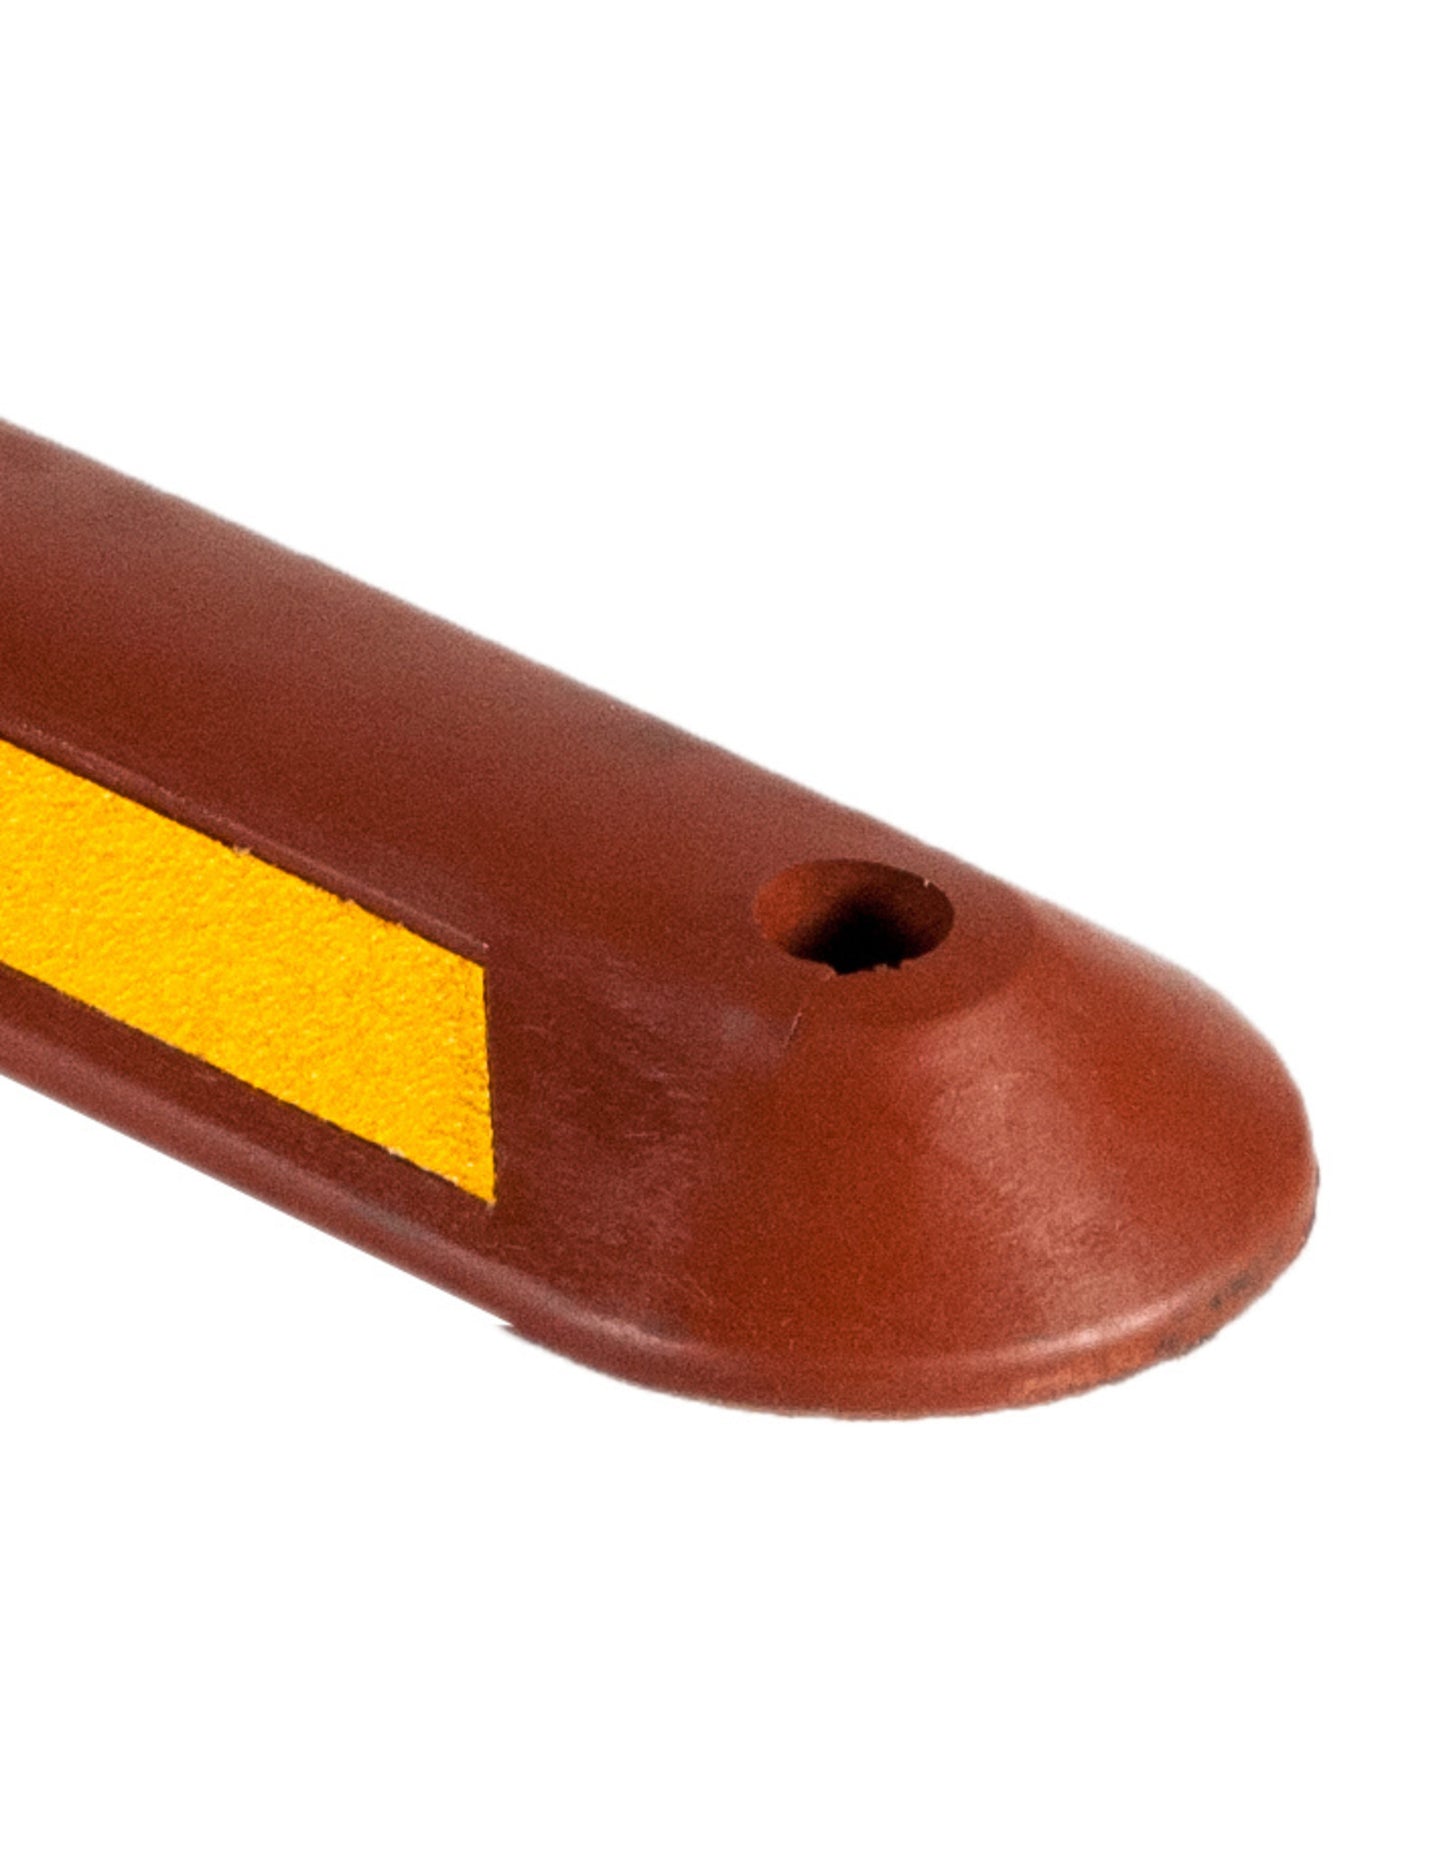 Séparateur de voie pour piste cyclable en caoutchouc rouge / jaune